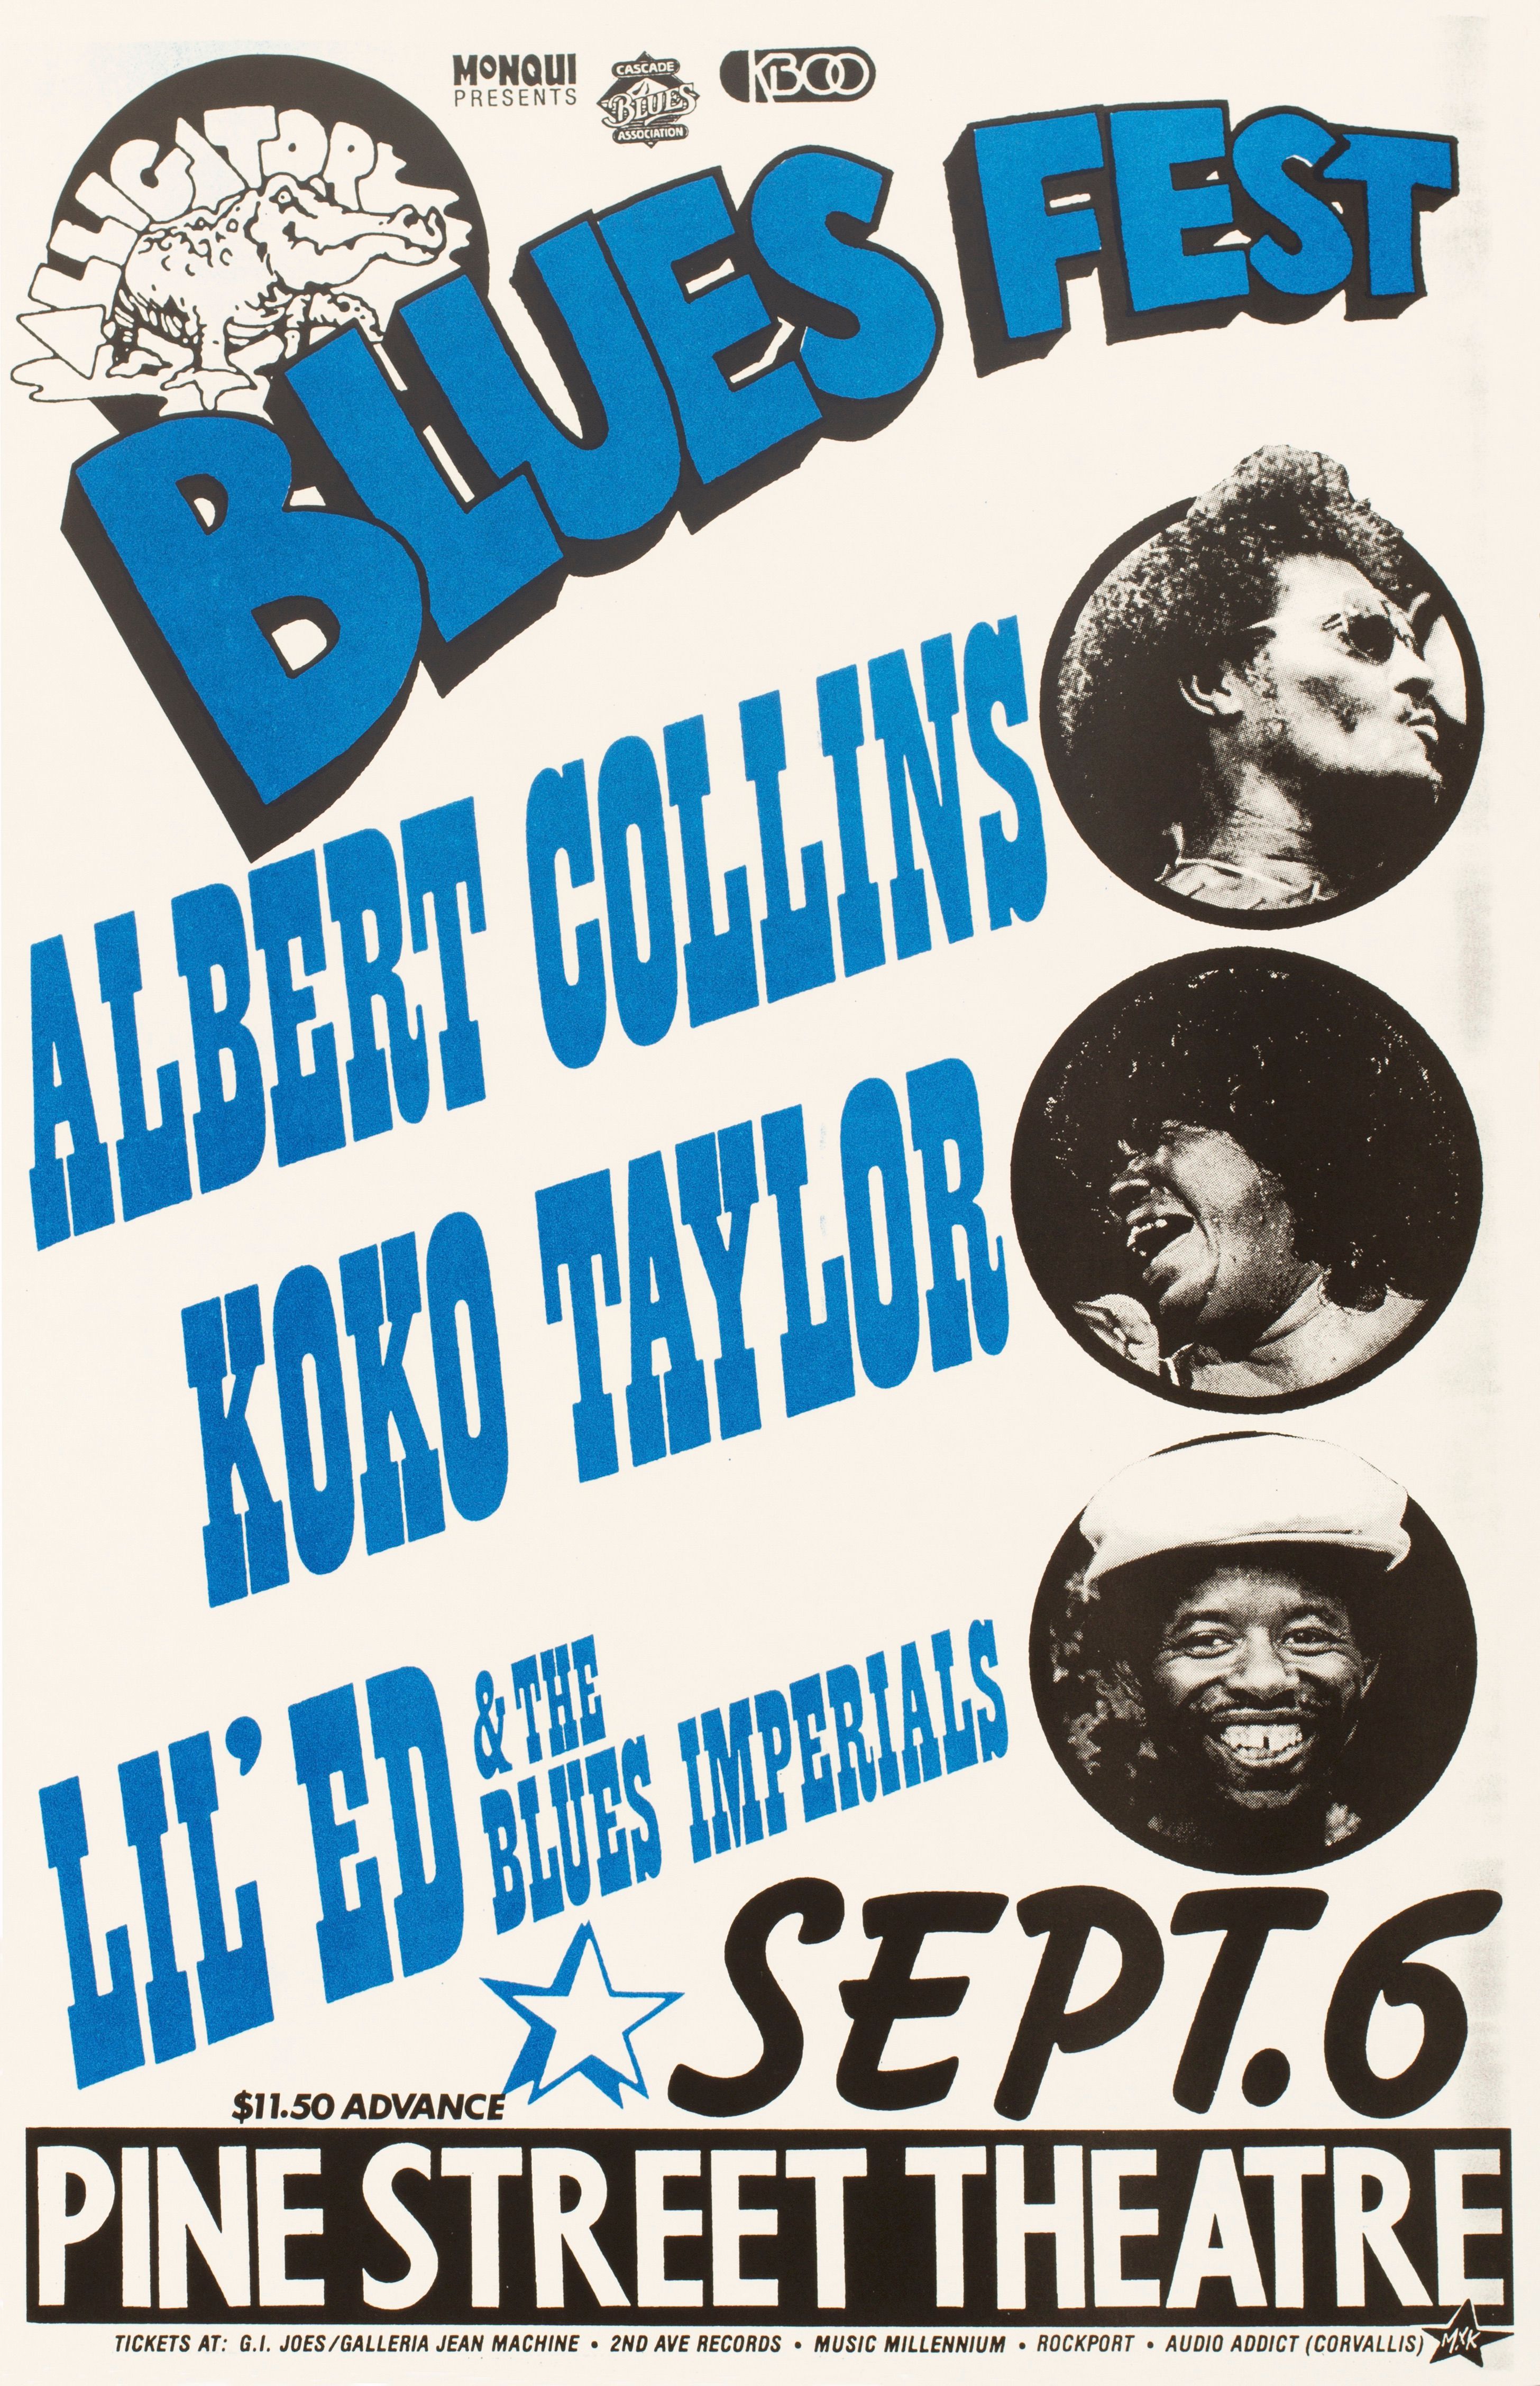 MXP-254.1 Alligator Blues Fest Pine Street Theatre 1987 Concert Poster